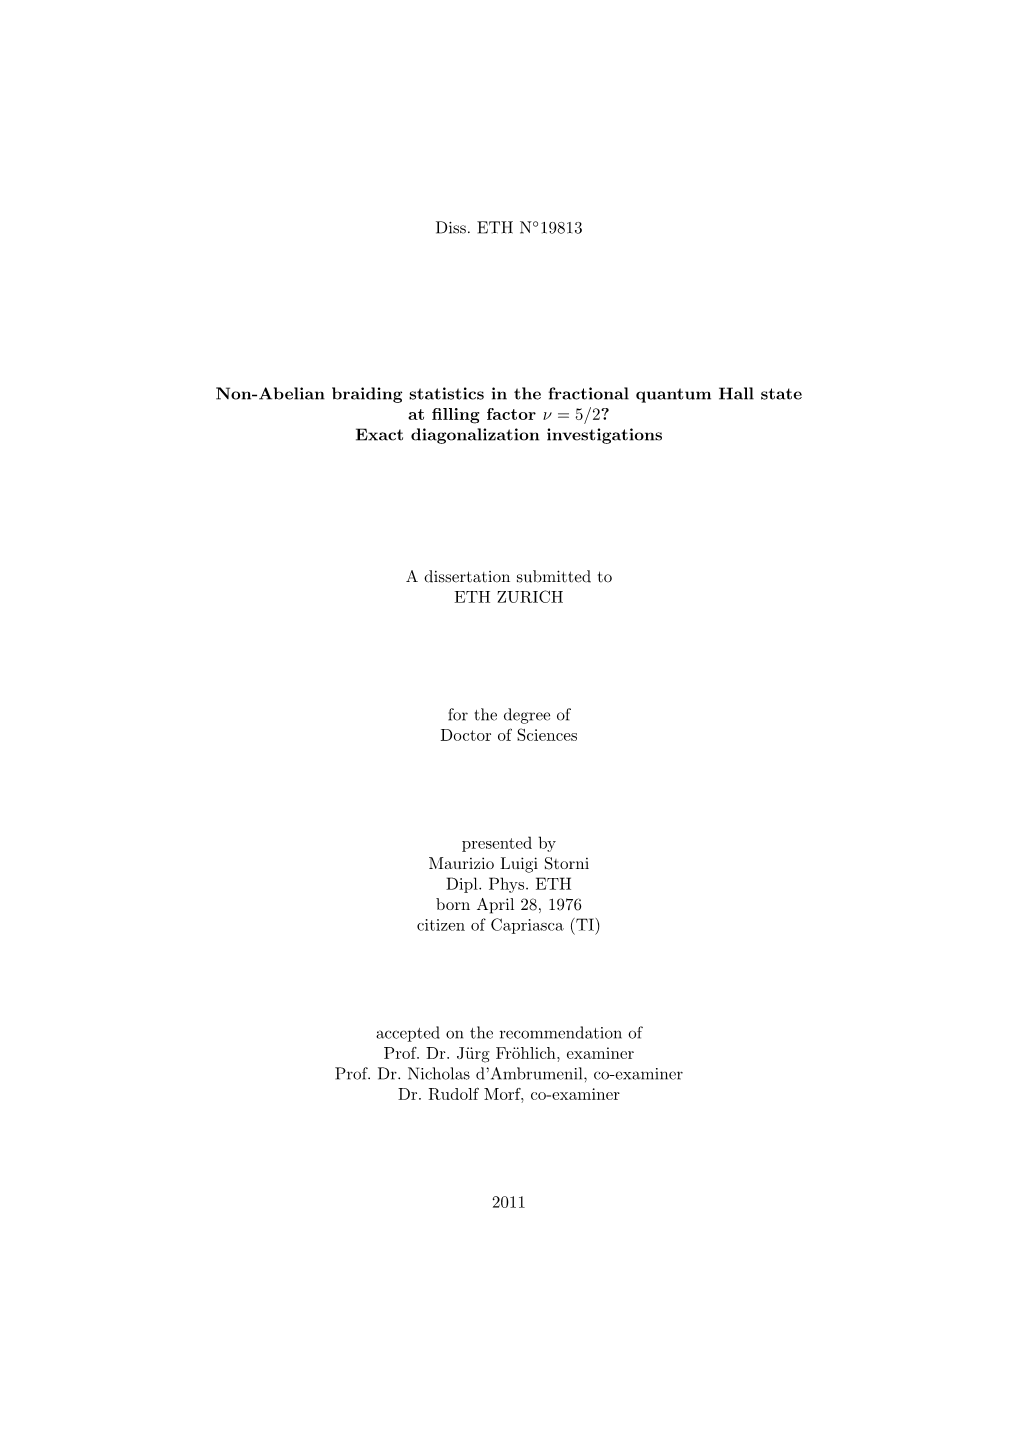 Diss. ETH N 19813 Non-Abelian Braiding Statistics In